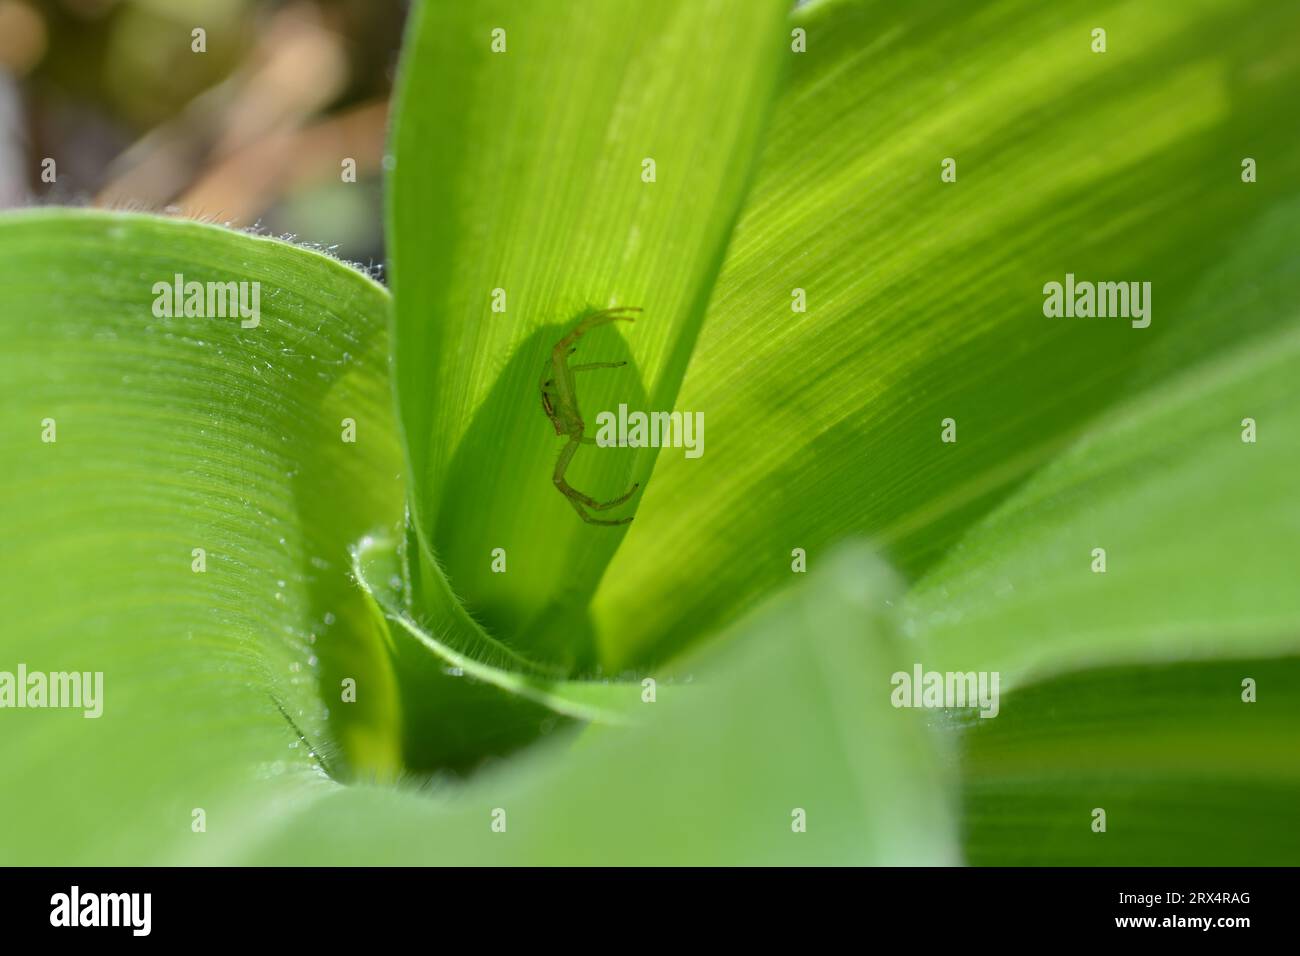 Astucieusement dissimulée dans la plante de maïs, une minuscule araignée verte attend patiemment sa proie sans méfiance. Le prédateur secret de la nature. Banque D'Images